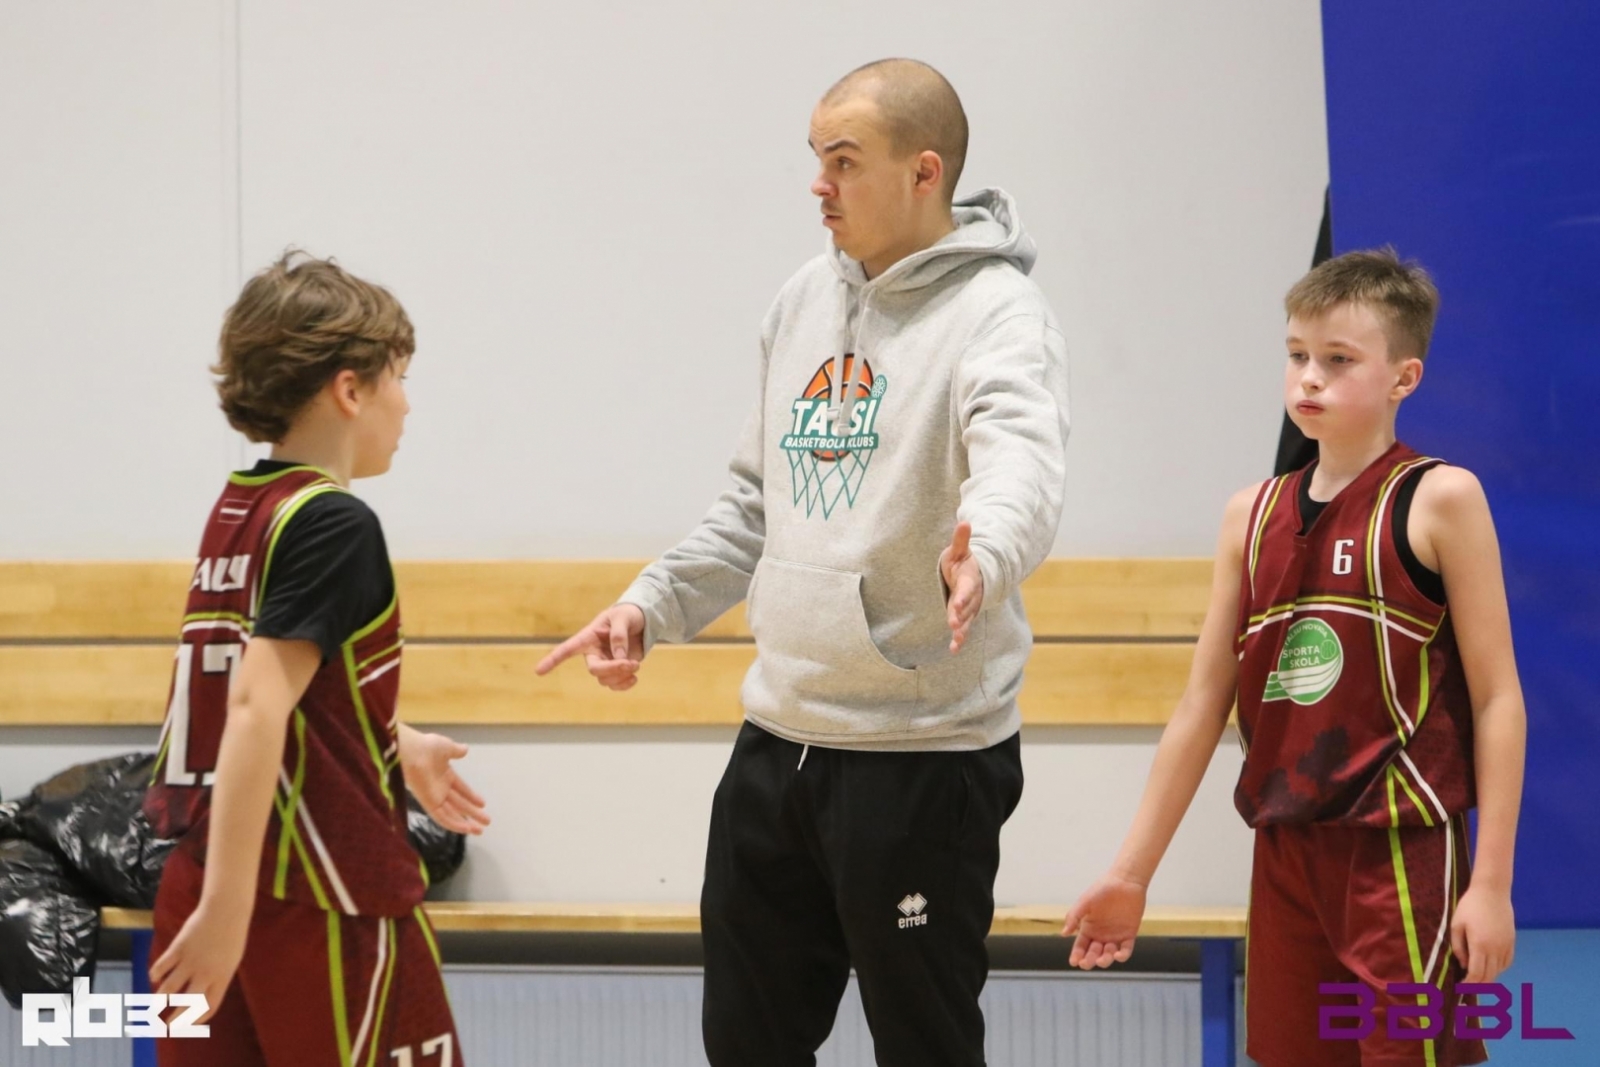 Baltijas Basketbola līgas posms Rīgā U12 grupai